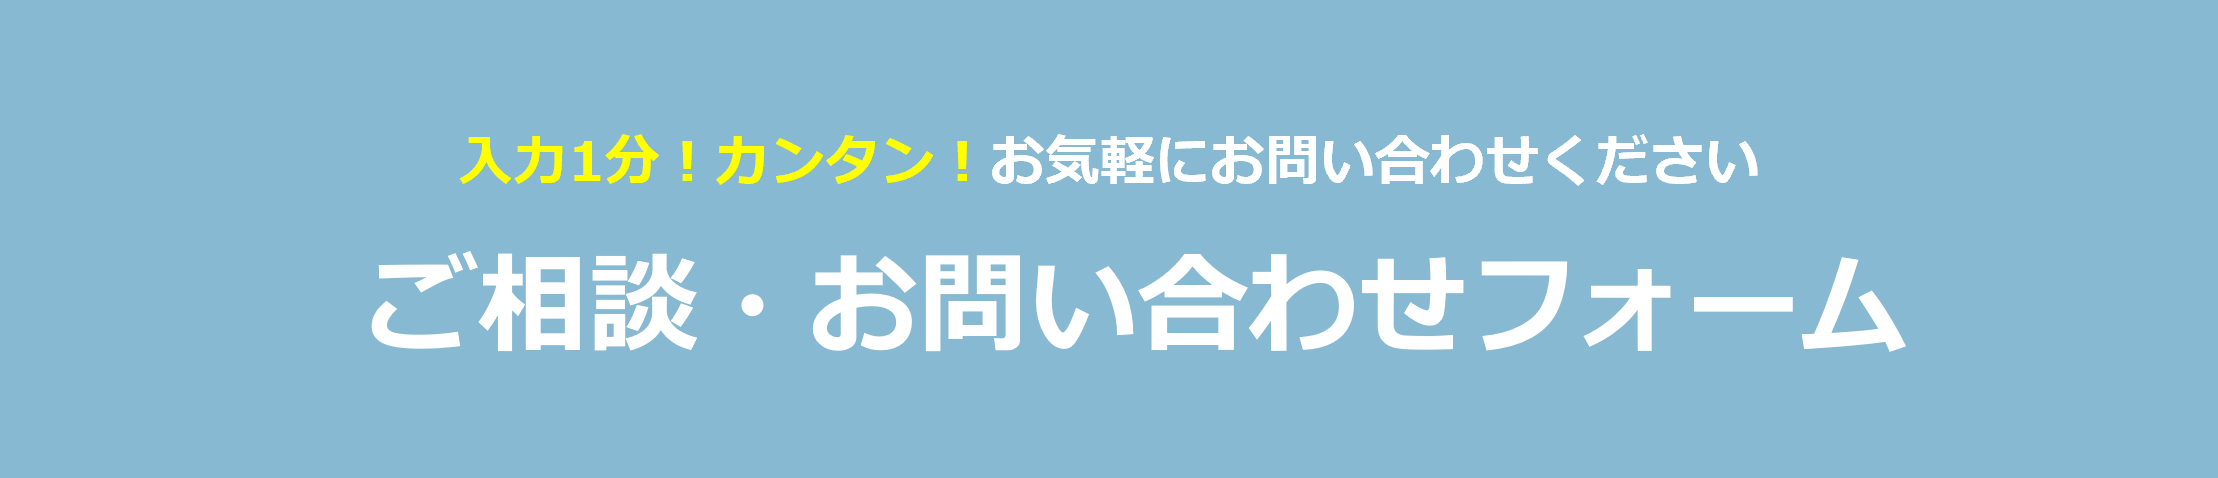 神奈川lp ̳問い合わせhead-3